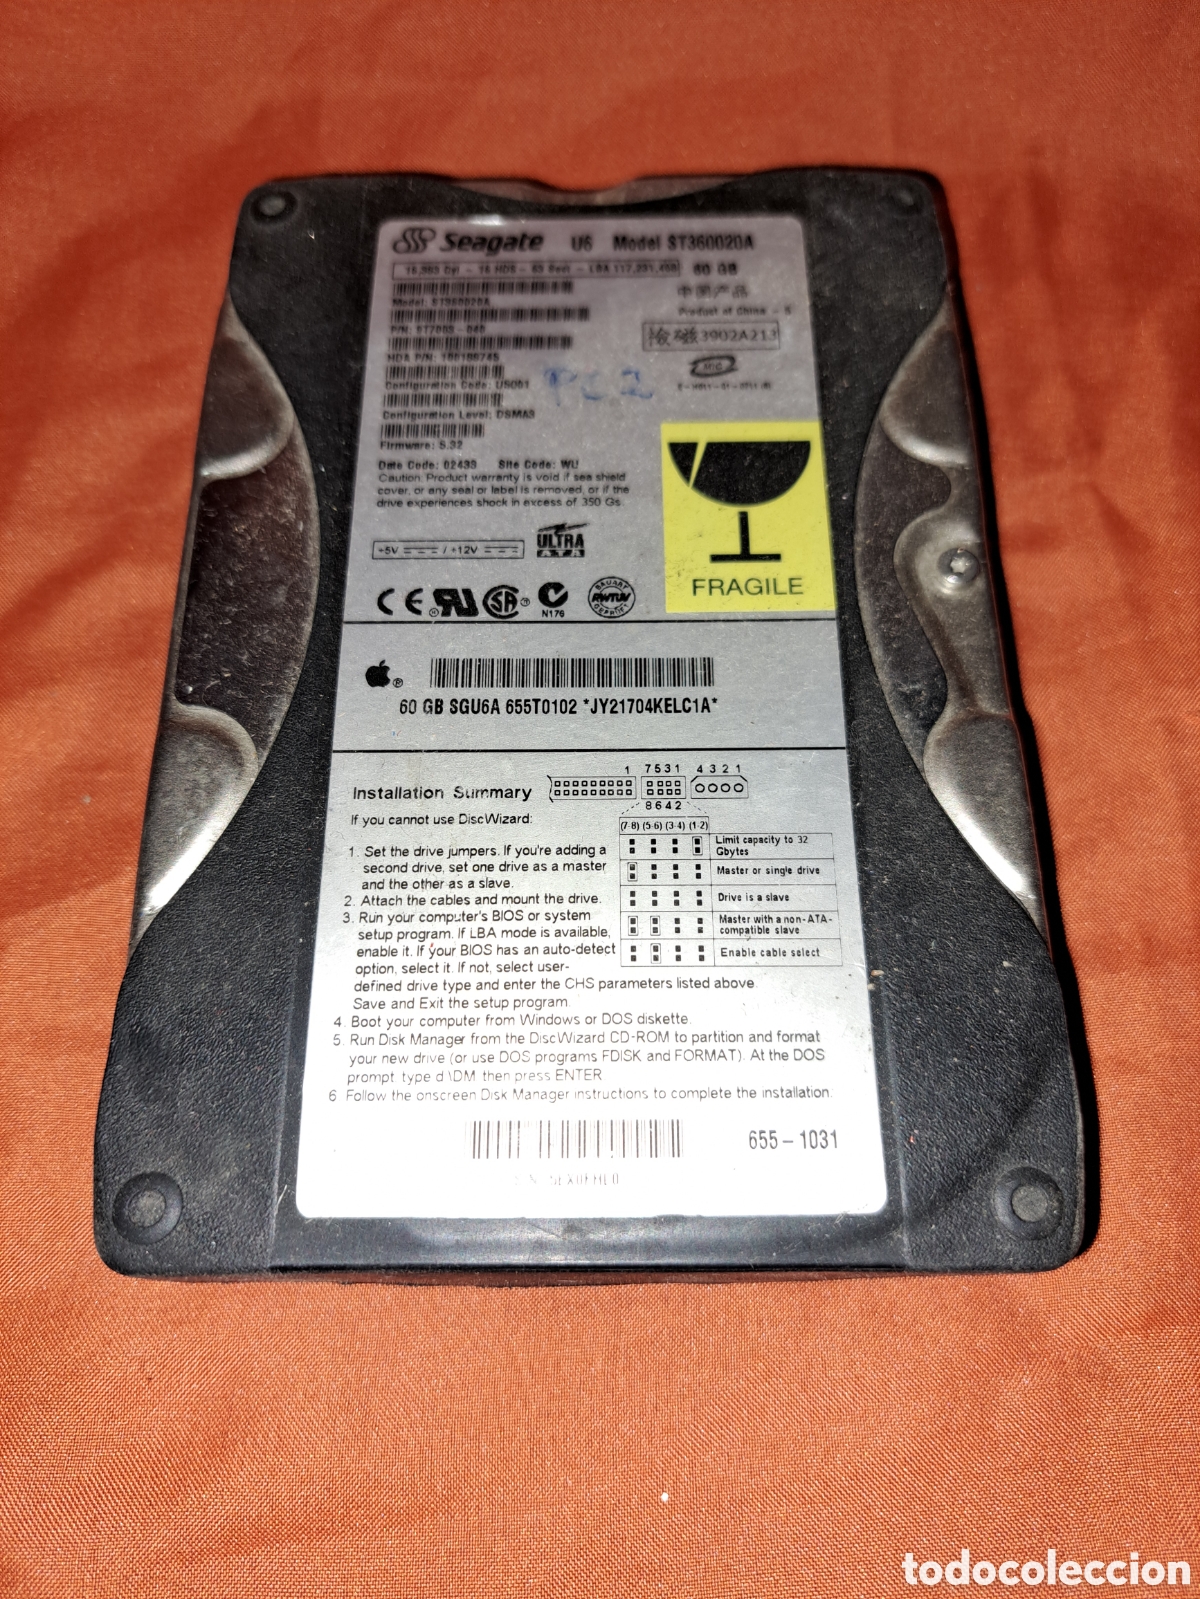 disco duro 60 modelo st360020a - Compra venta en todocoleccion